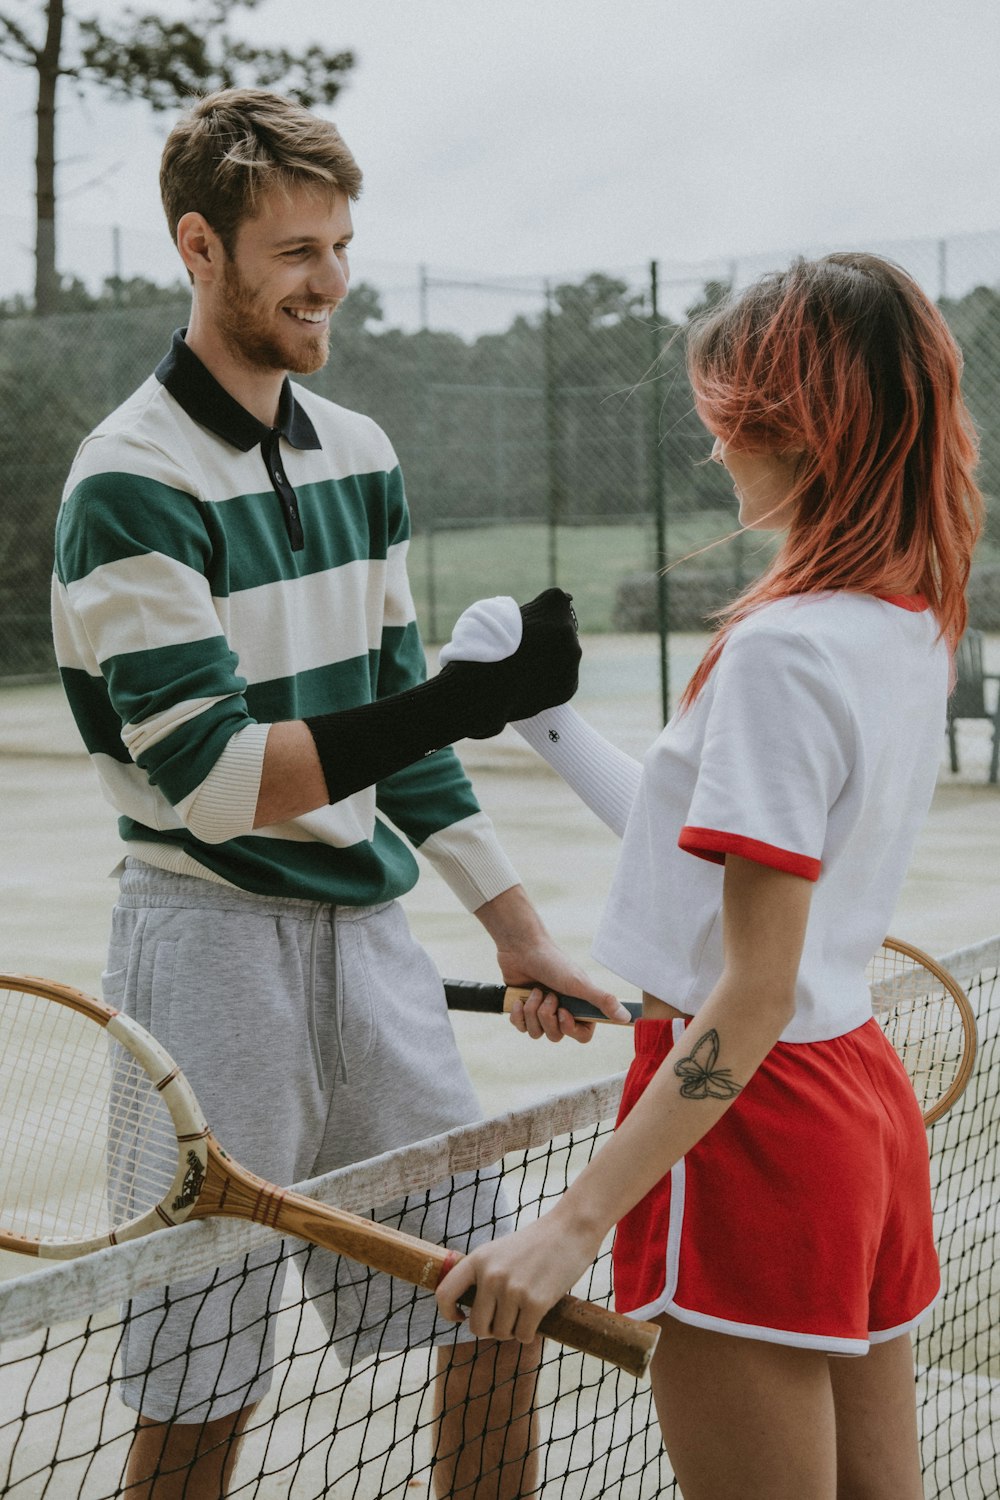 茶色のテニスラケットを持つ白と緑の縞模様のポロシャツを着た男